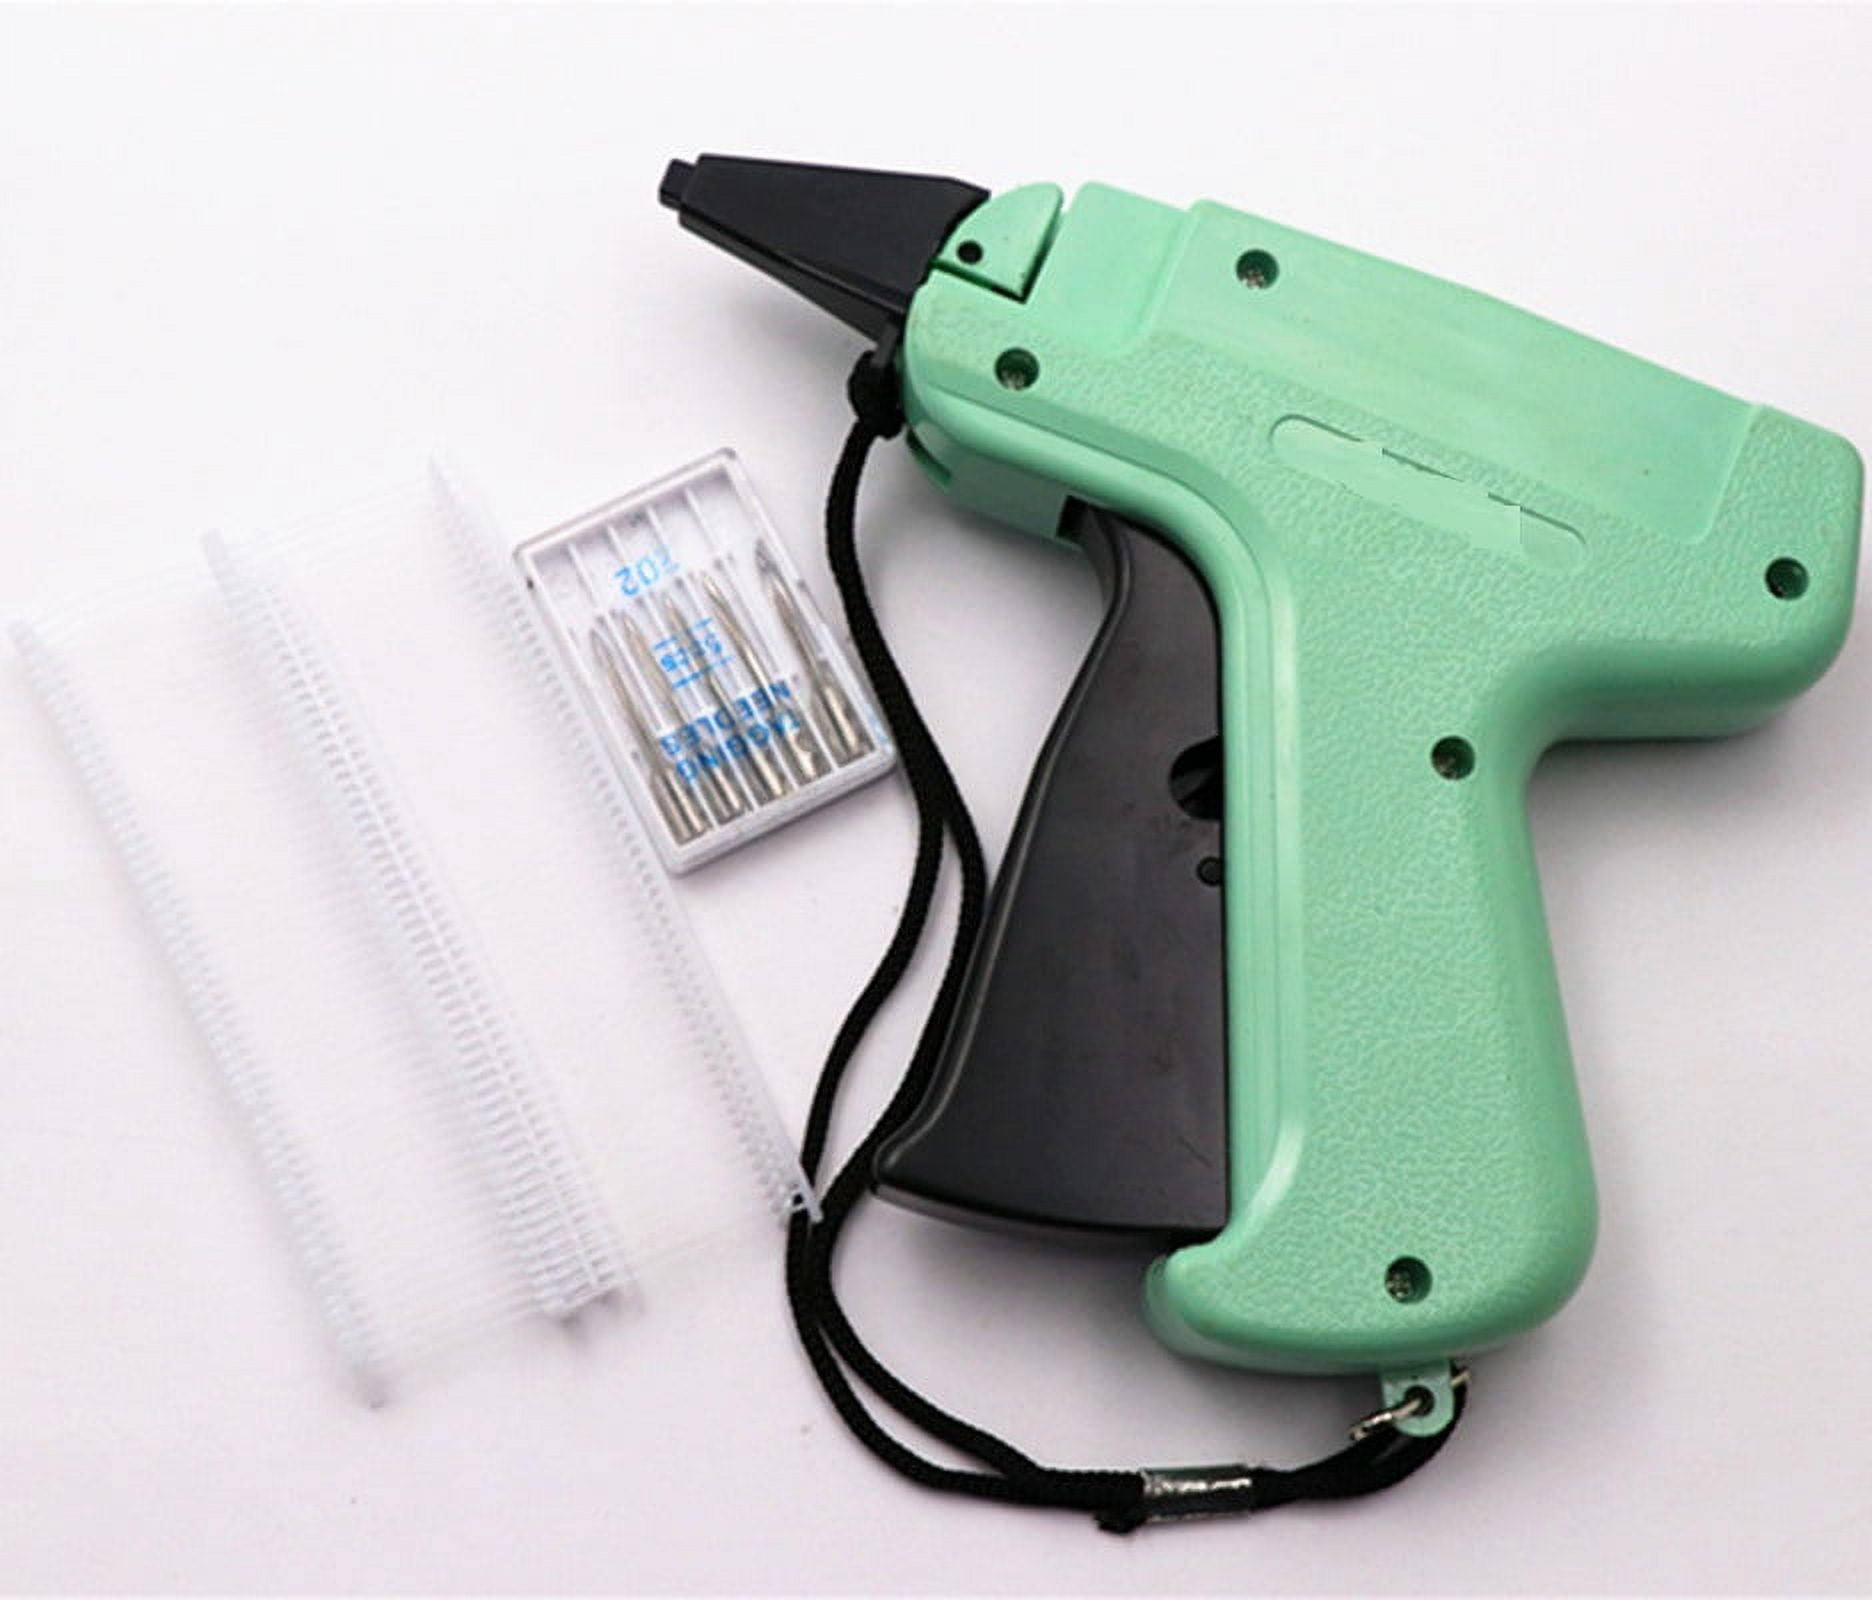 1606pcs Tagging Gun Kit for Clothing, Price Tag Gun with 6 Steel